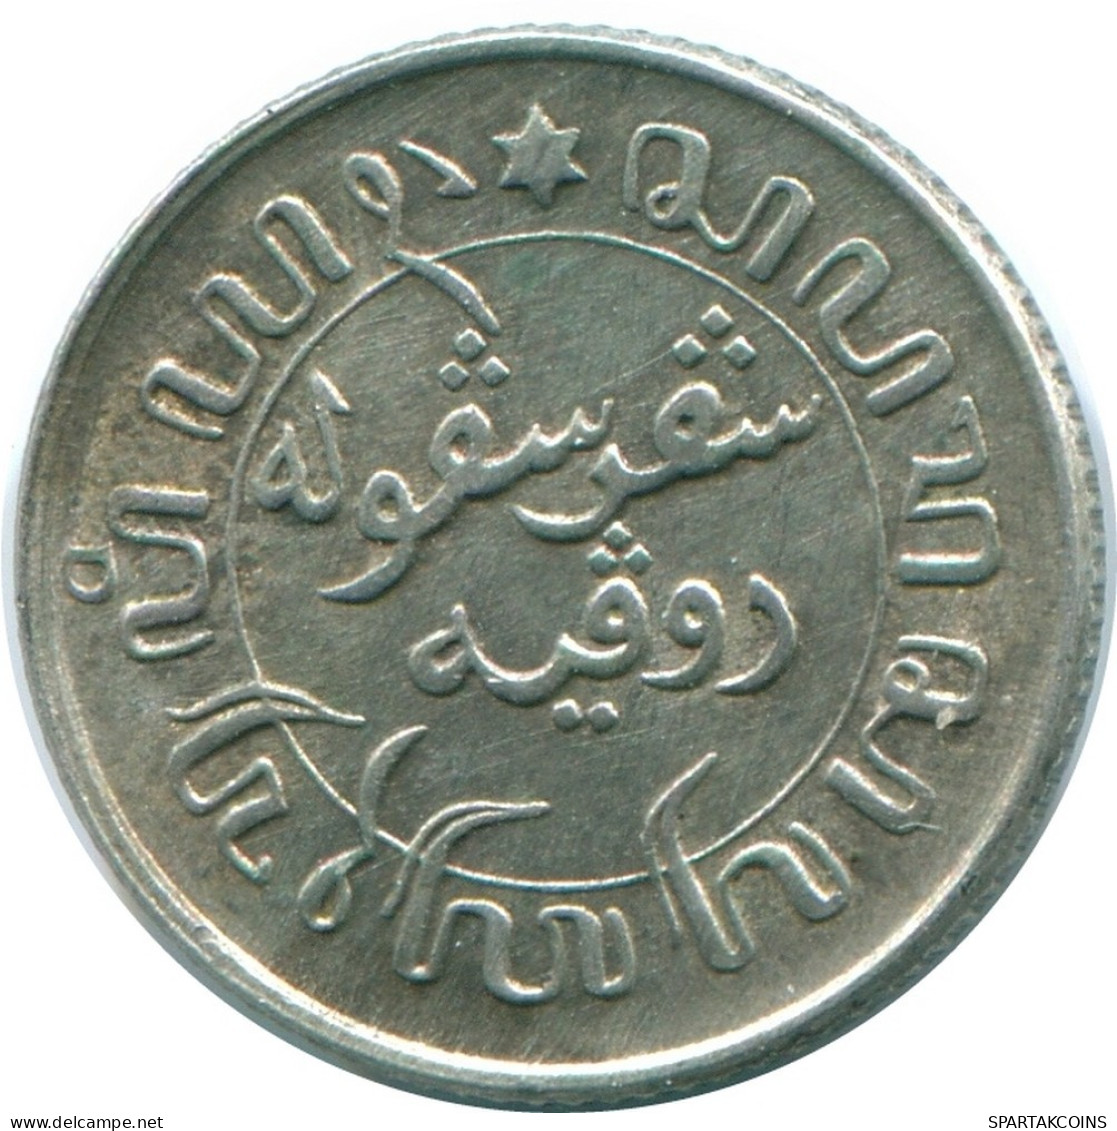 1/10 GULDEN 1945 P NIEDERLANDE OSTINDIEN SILBER Koloniale Münze #NL14085.3.D.A - Niederländisch-Indien